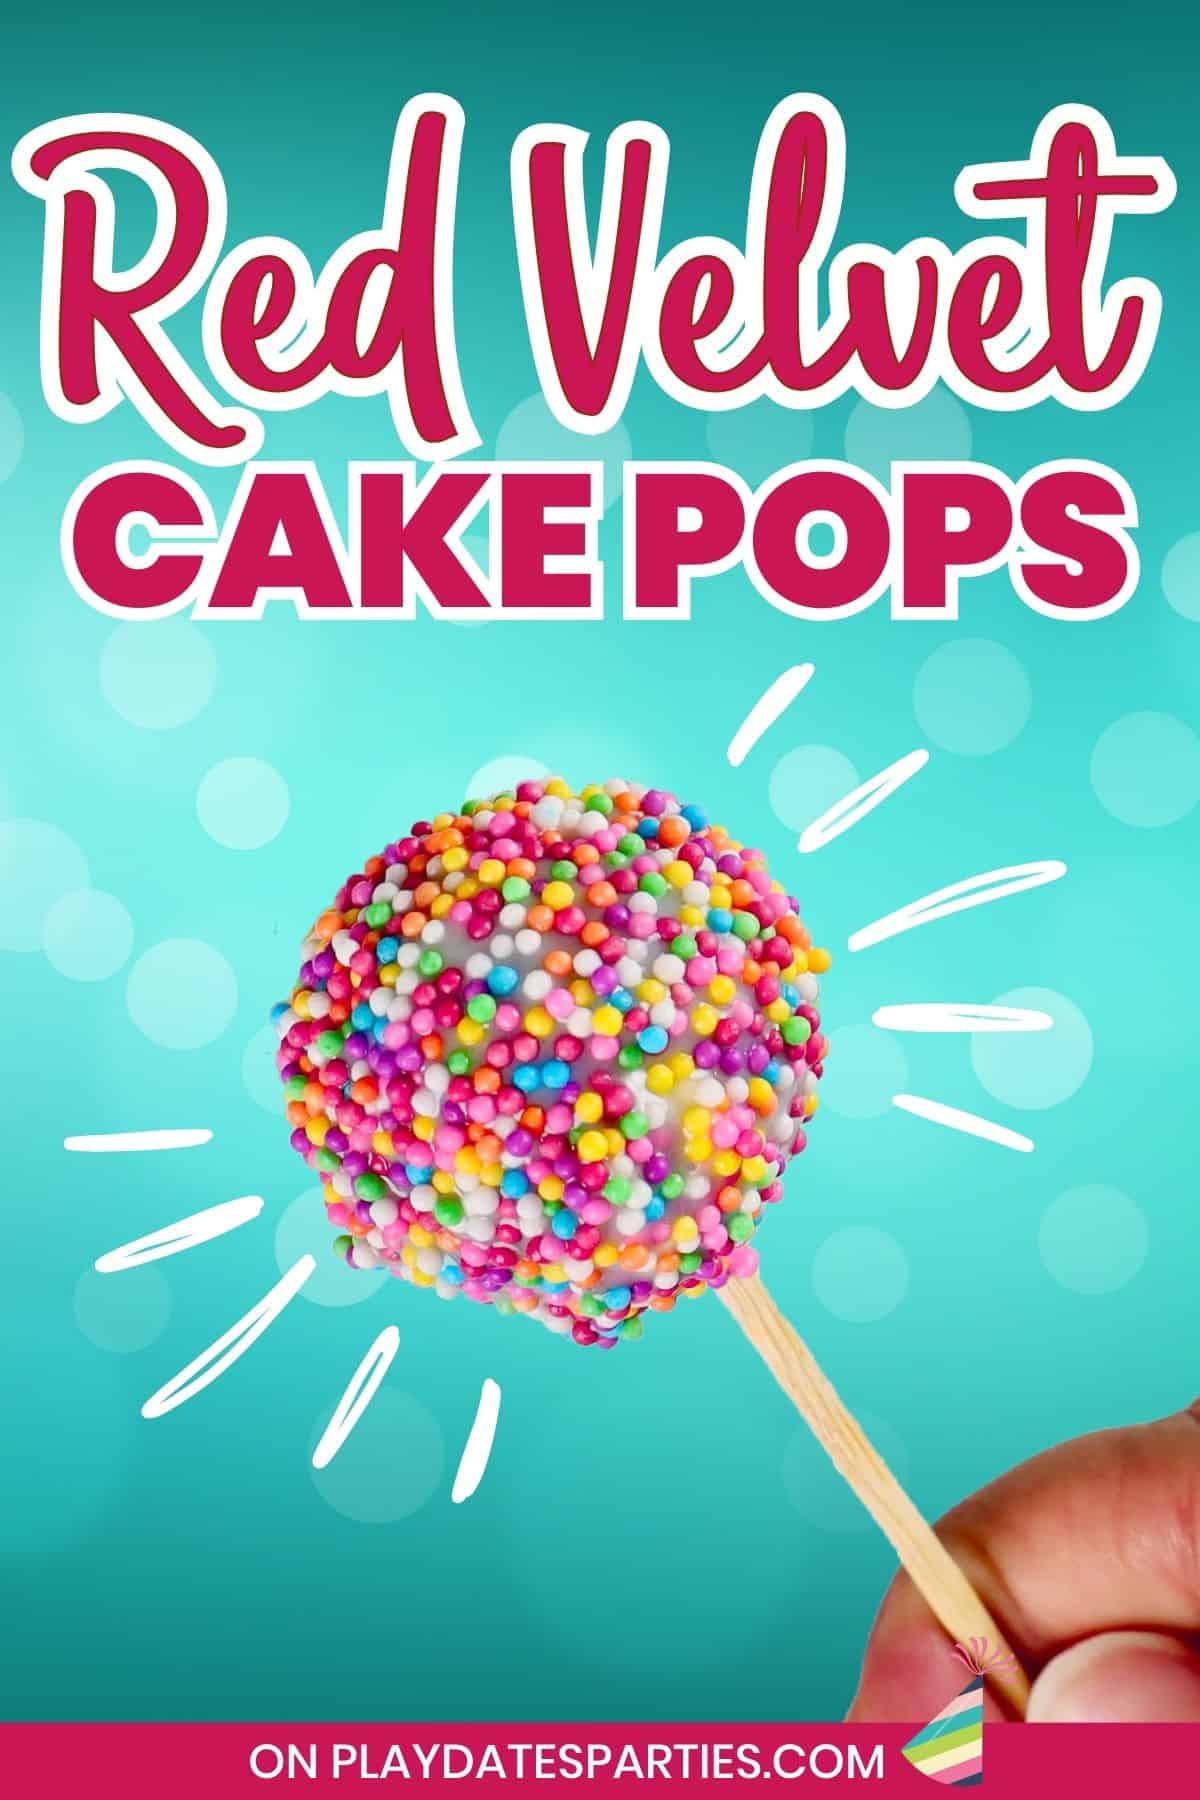 Red Velvet Cake Pops Pin Image.